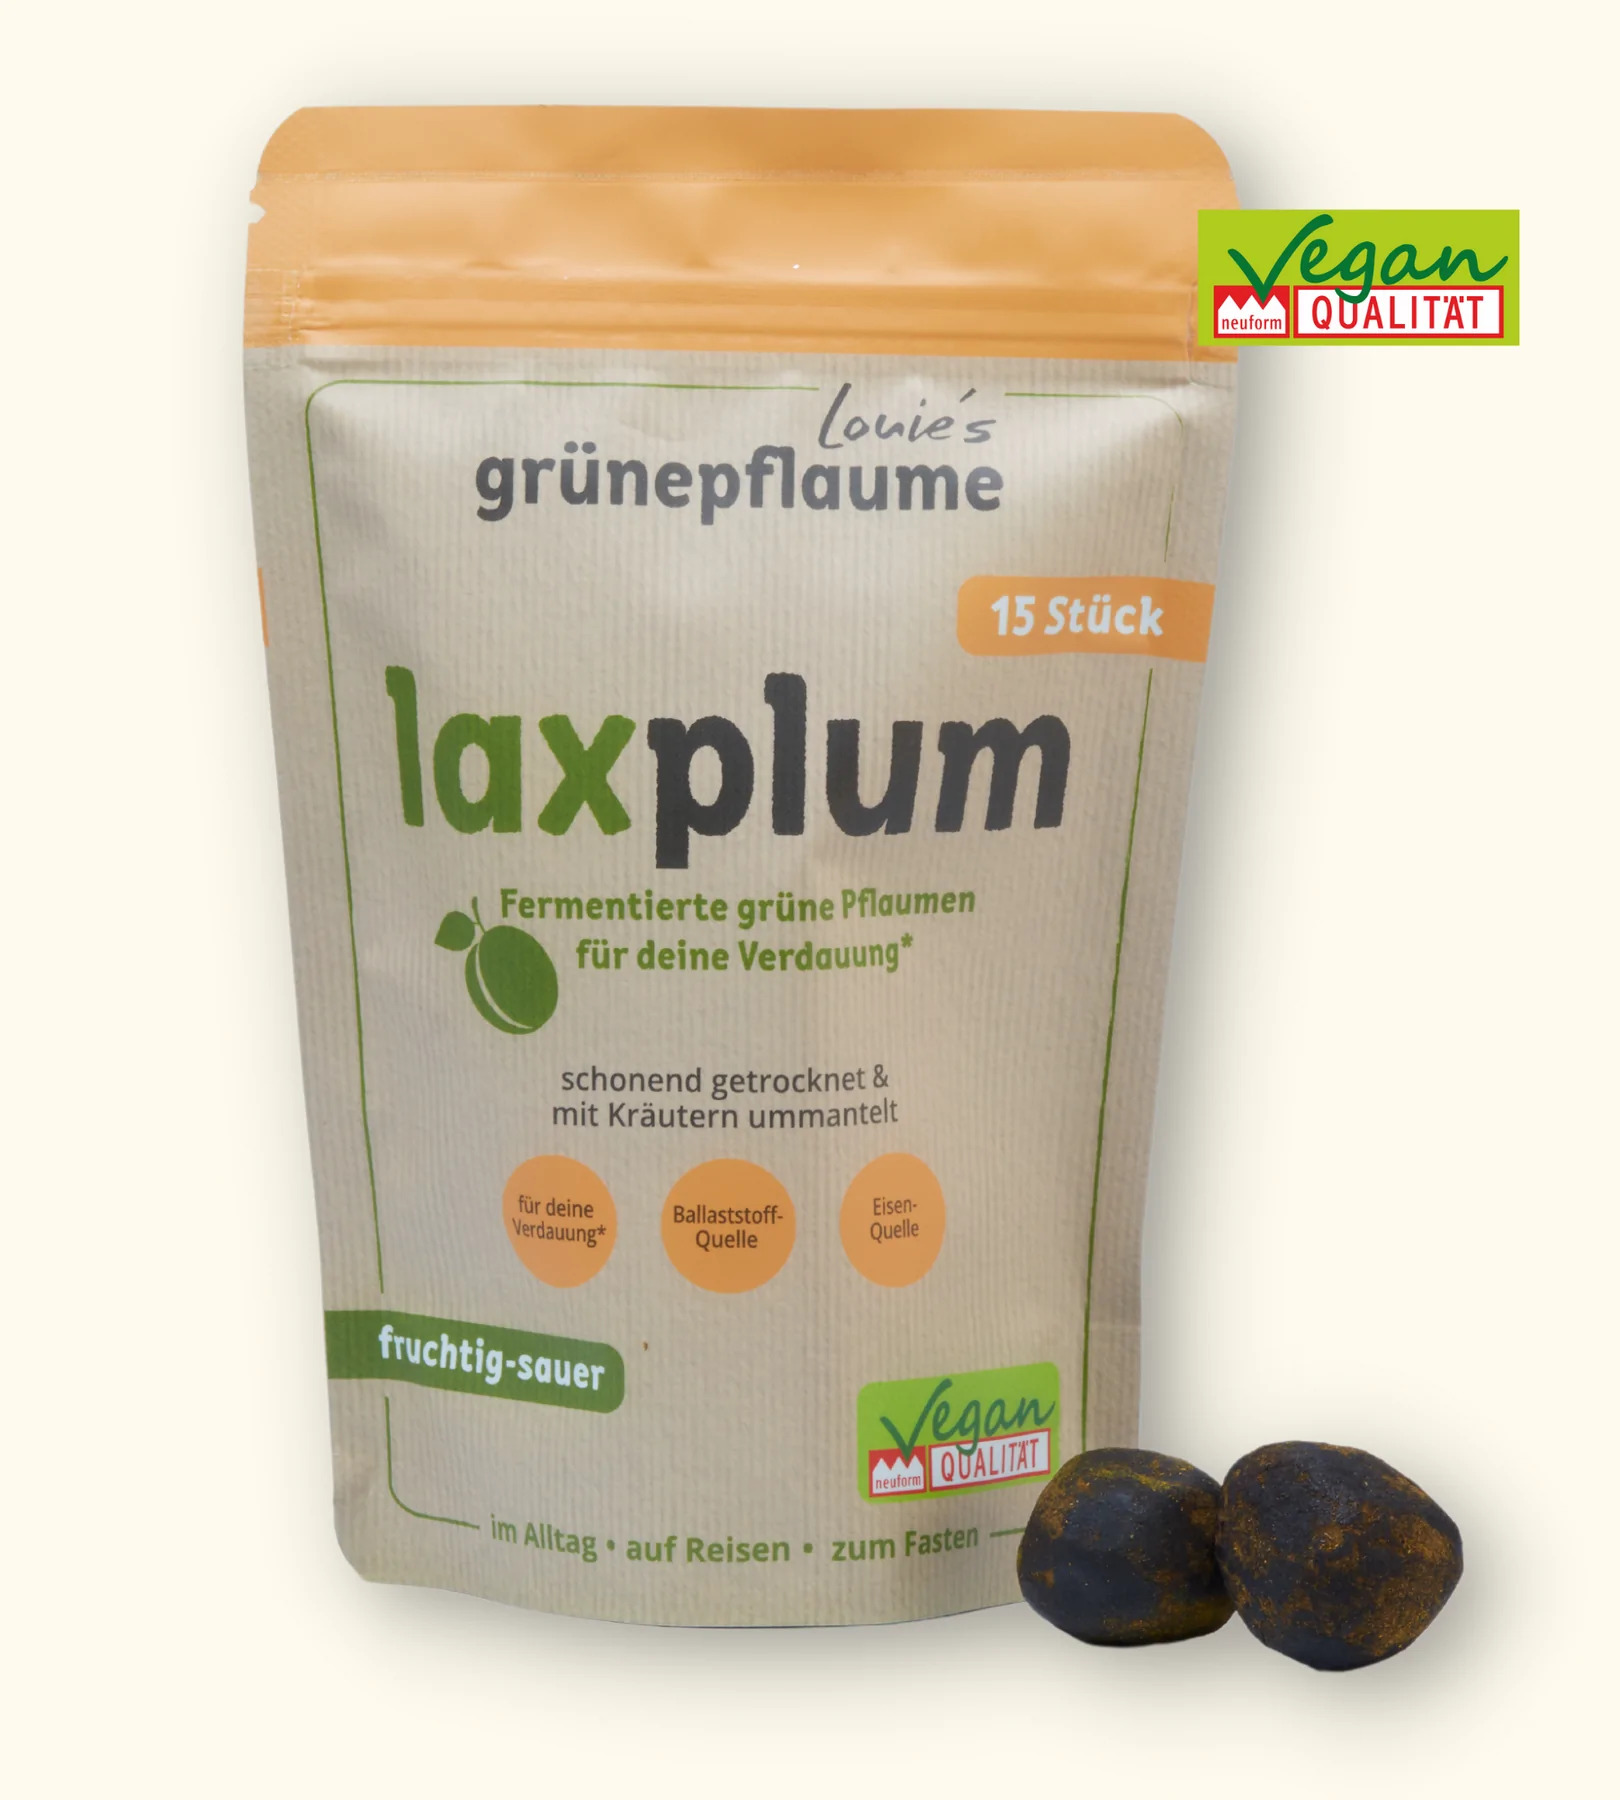 laxplum - Louie´s grünepflaume 9 Stück